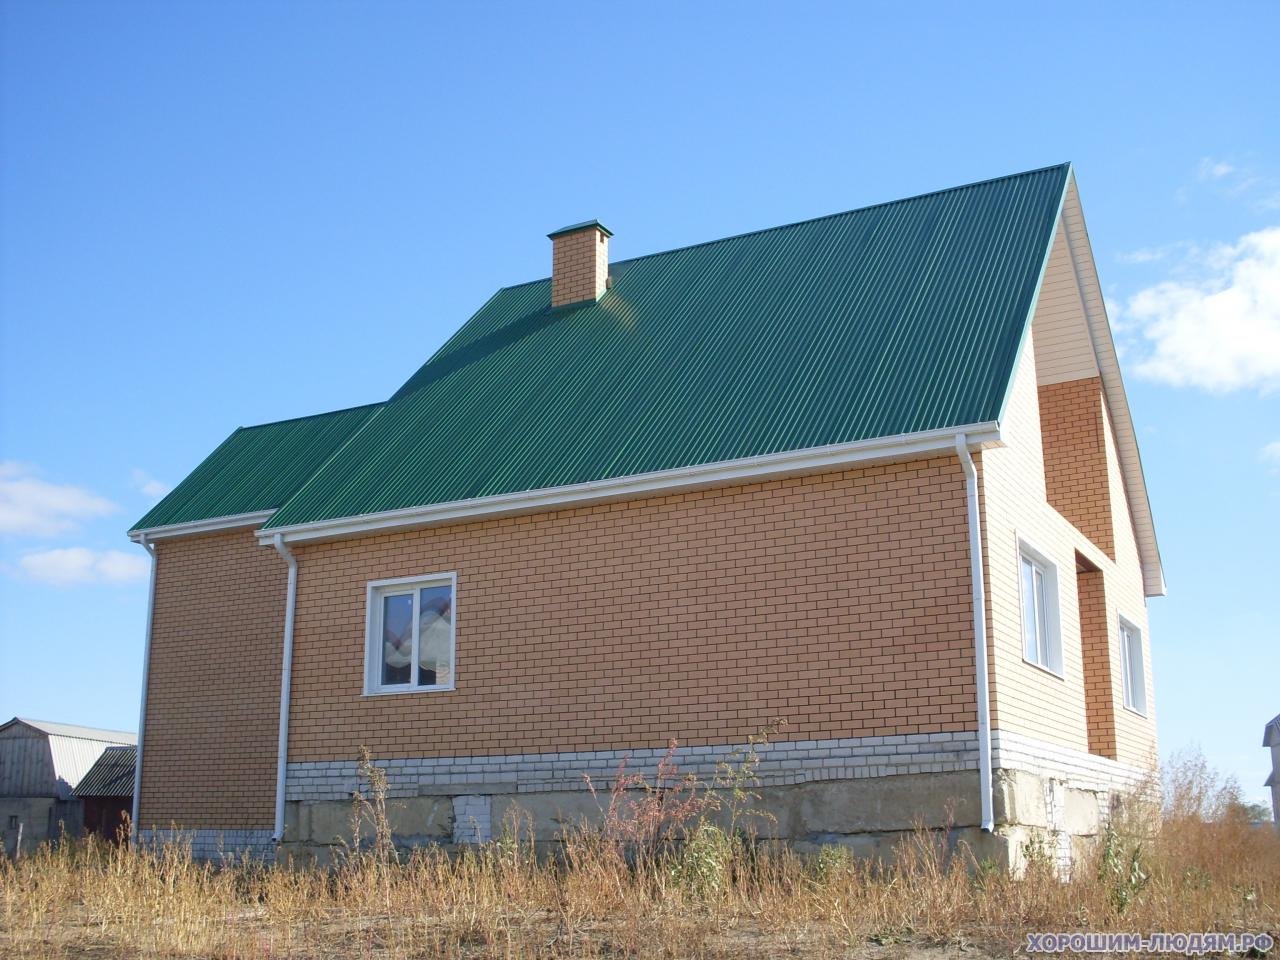 Дом в добром липецкой области. Кирпичный дом с зеленой крышей. Дом из белого кирпича с зеленой крышей. Кирпичные дома с зеленой крышей. Дом из желтого кирпича с зеленой крышей.